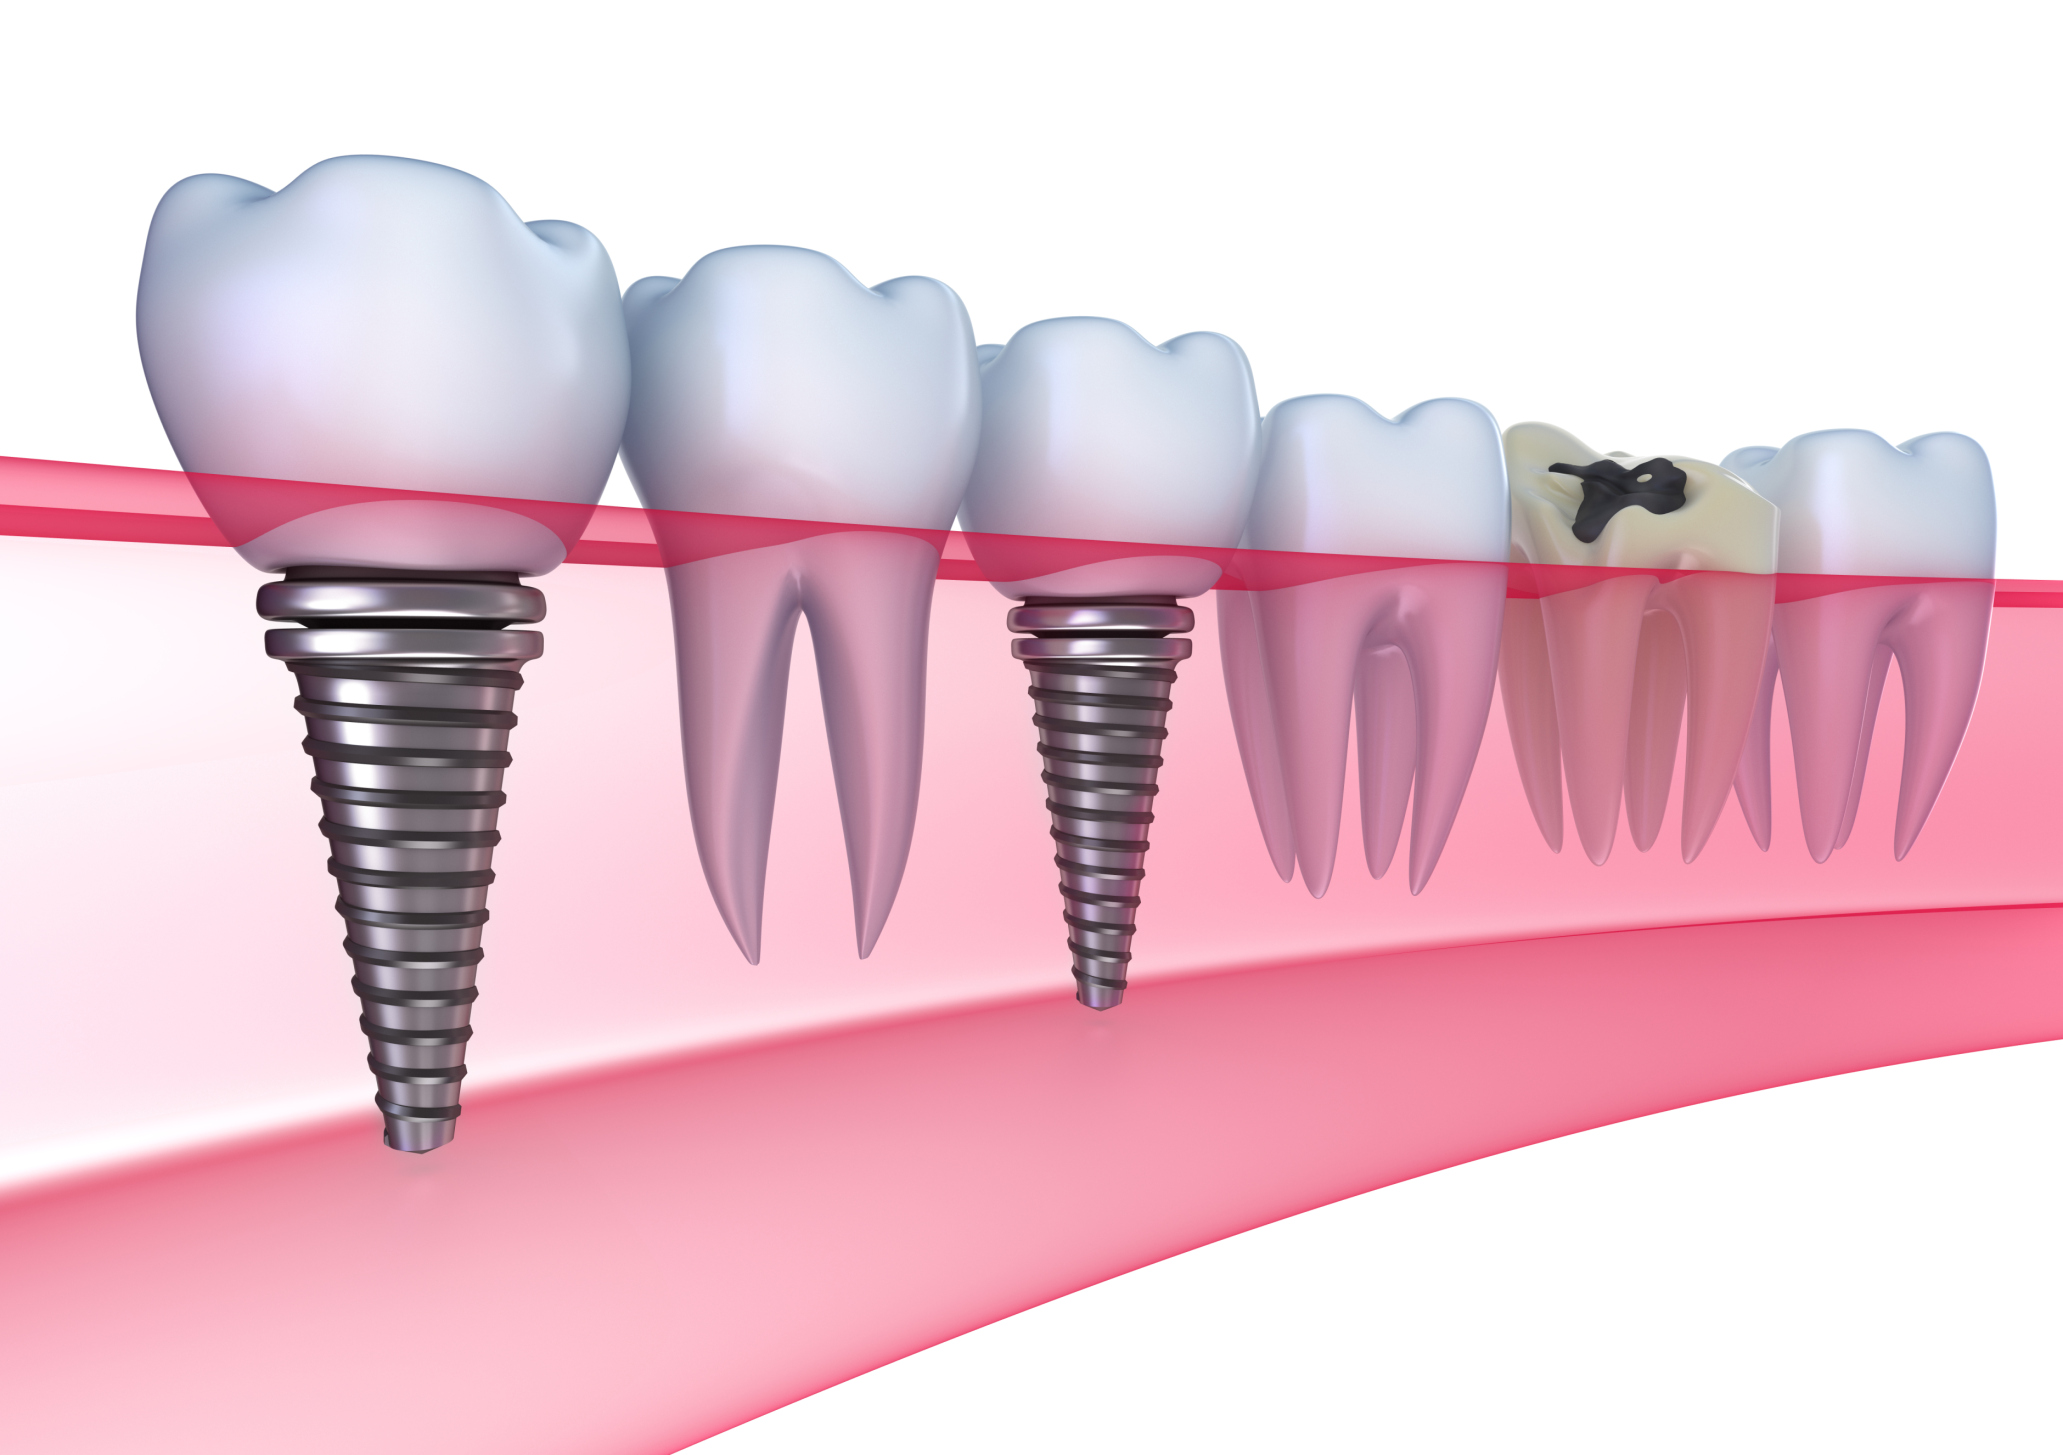 Giải pháp trồng răng Implant khi bị mất một răng